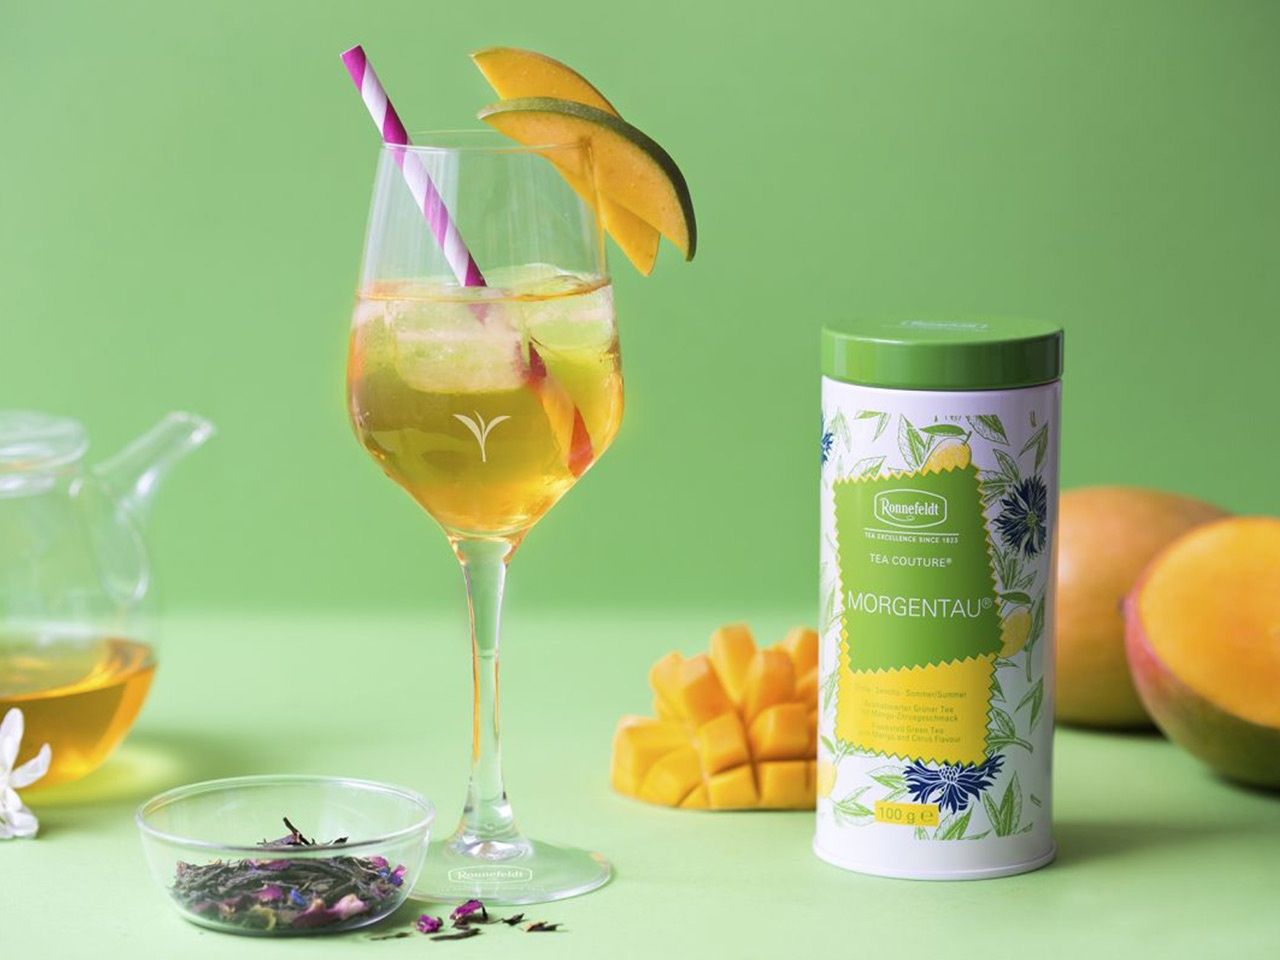 Bild von Morgentau-Cocktail im Glas mit Ronnefeldt TeaCouture Morgentau Dose